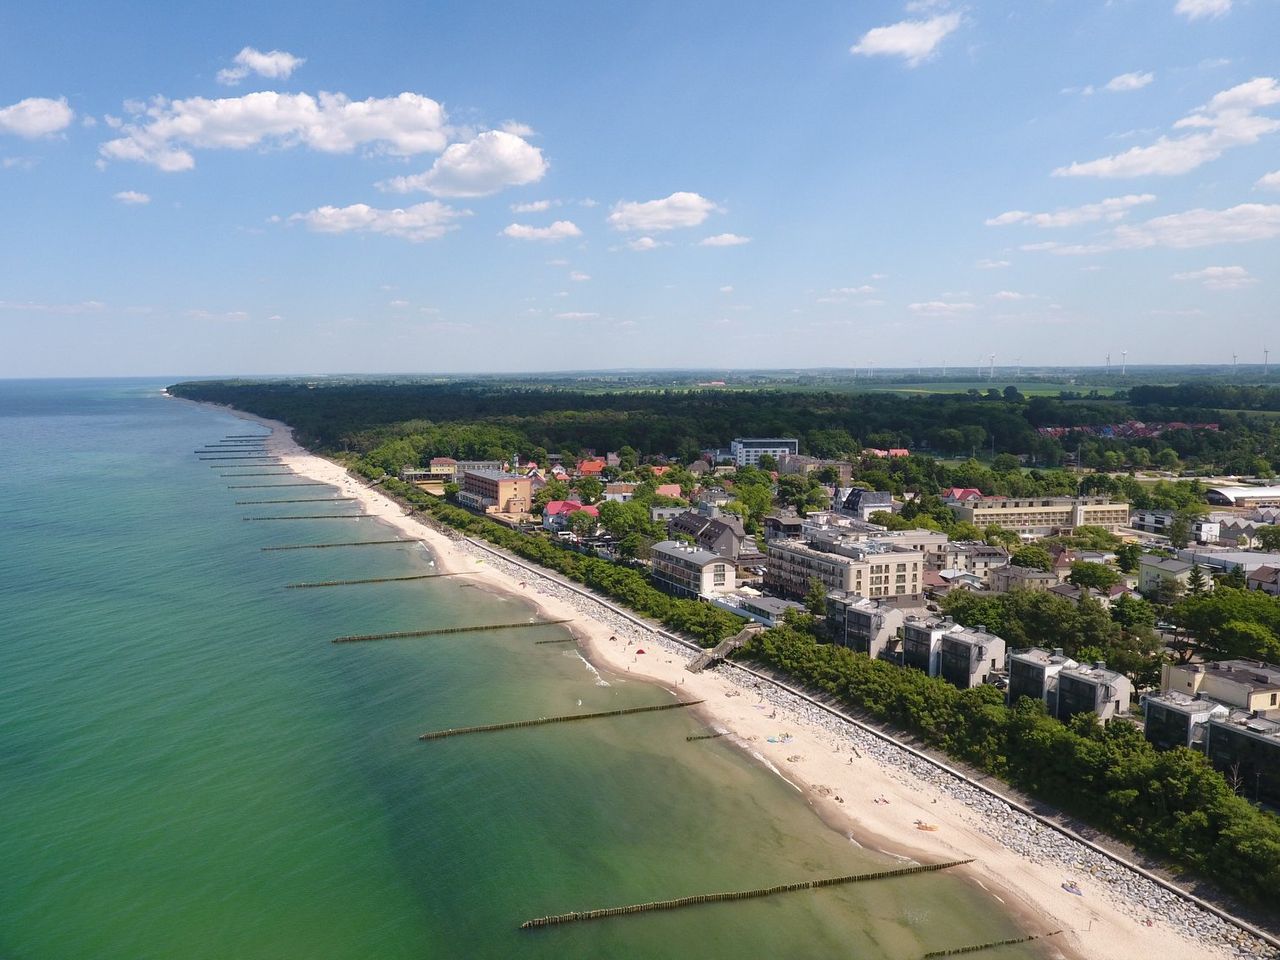 Urlaub an der Ostsee - 2 Tage mit Halbpension